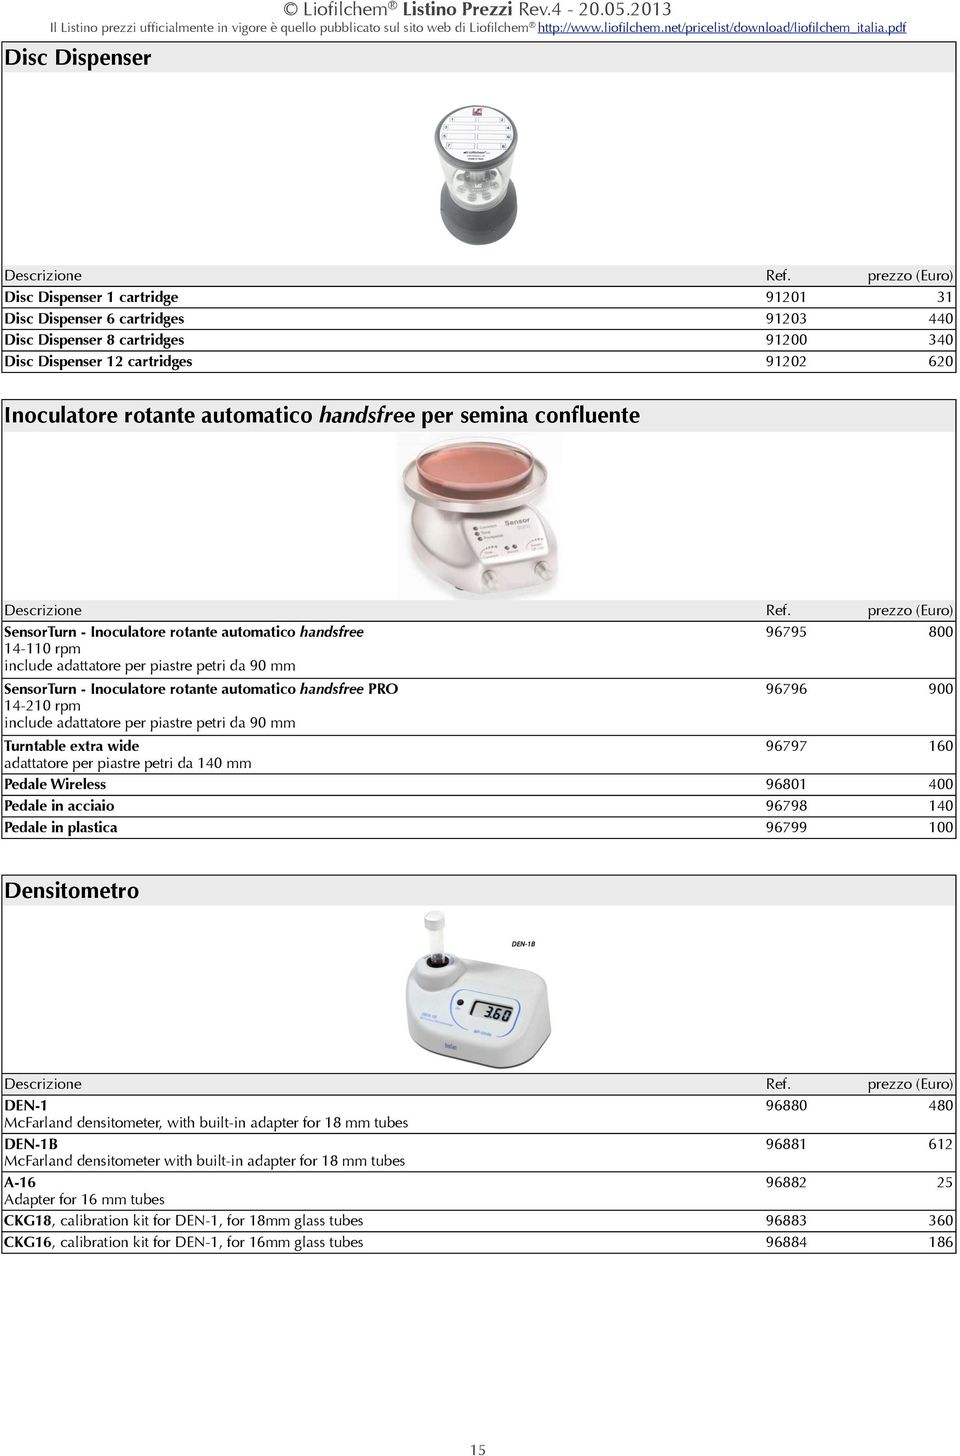 91201 91203 91200 91202 prezzo (Euro) 31 440 340 620 Descrizione SensorTurn - Inoculatore rotante automatico handsfree 14-110 rpm include adattatore per piastre petri da 90 mm Ref.